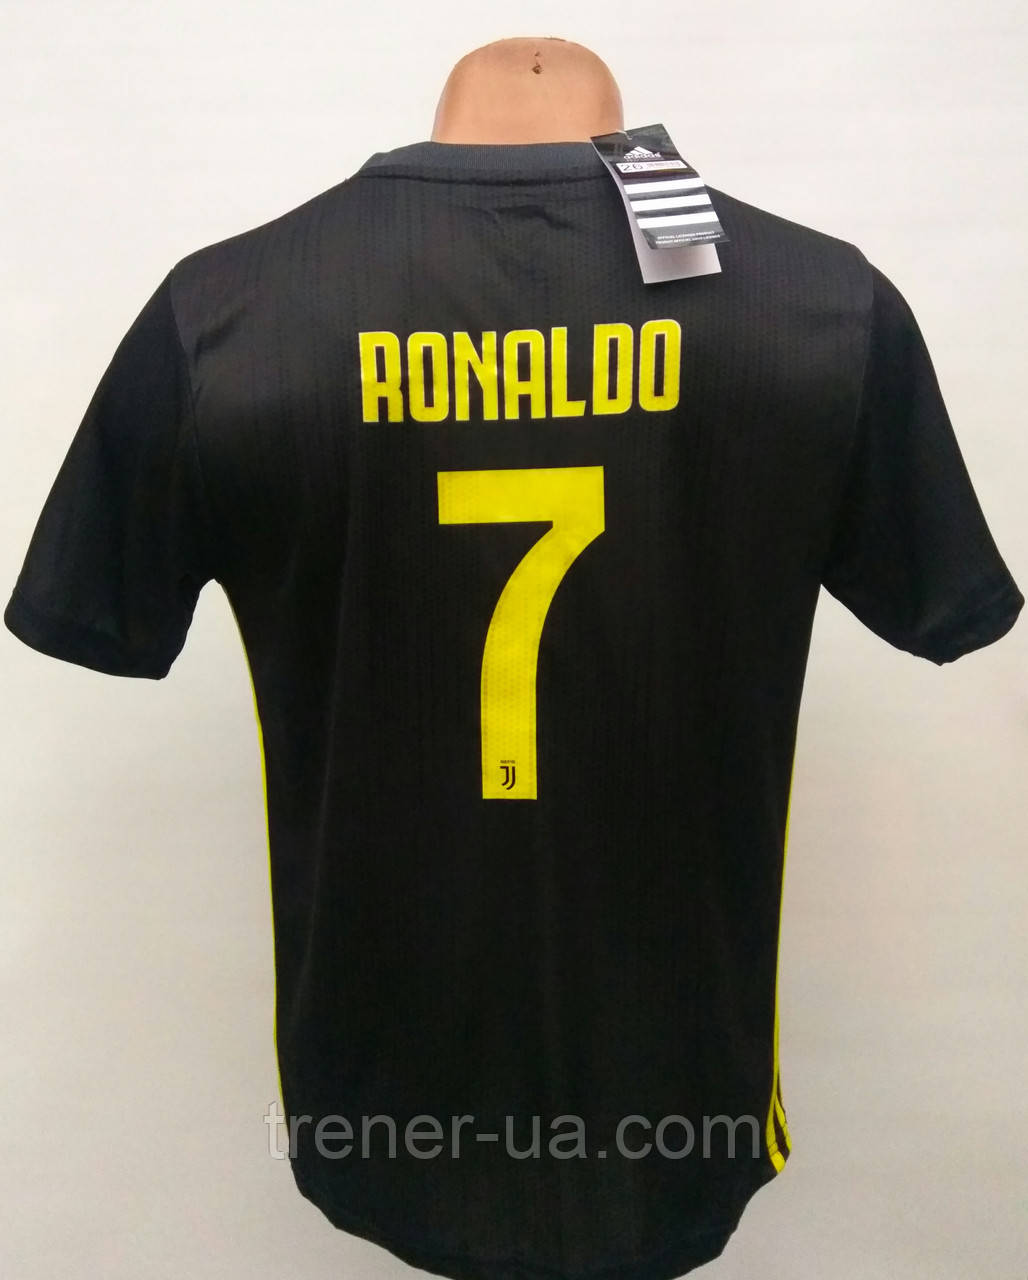 Розпродаж форми Ronaldo/уцінка форми 110-135 см у стилі Adidas Juventus Ronaldo/ Ювентус графіт/Ювентус